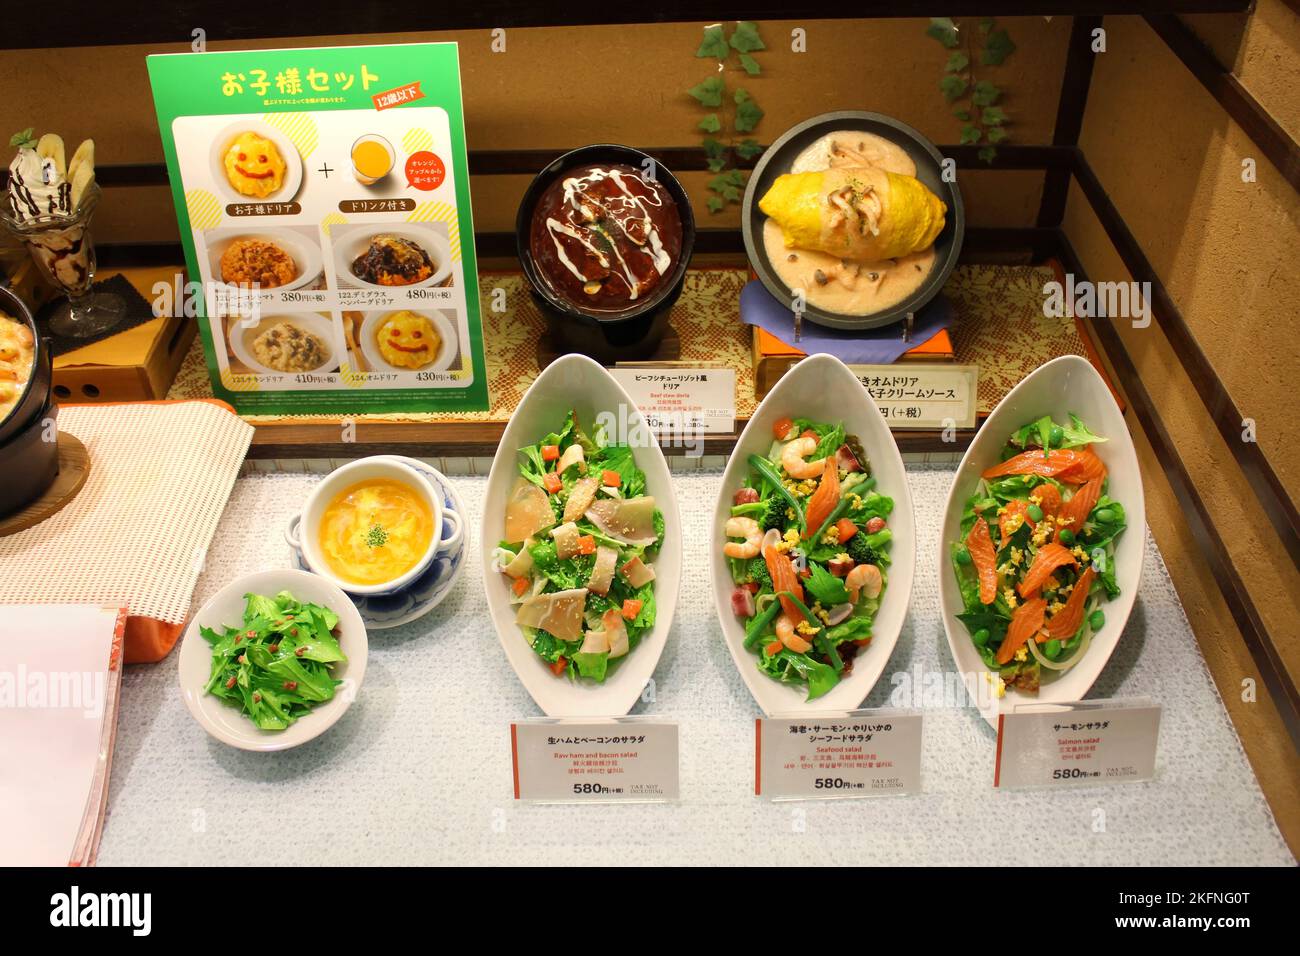 Dégustation de plats japonais dans un centre commercial de Tokyo. Réplique de nourriture aider à obtenir une impression du plat mieux qu'une image et sont communs au Japon. Banque D'Images